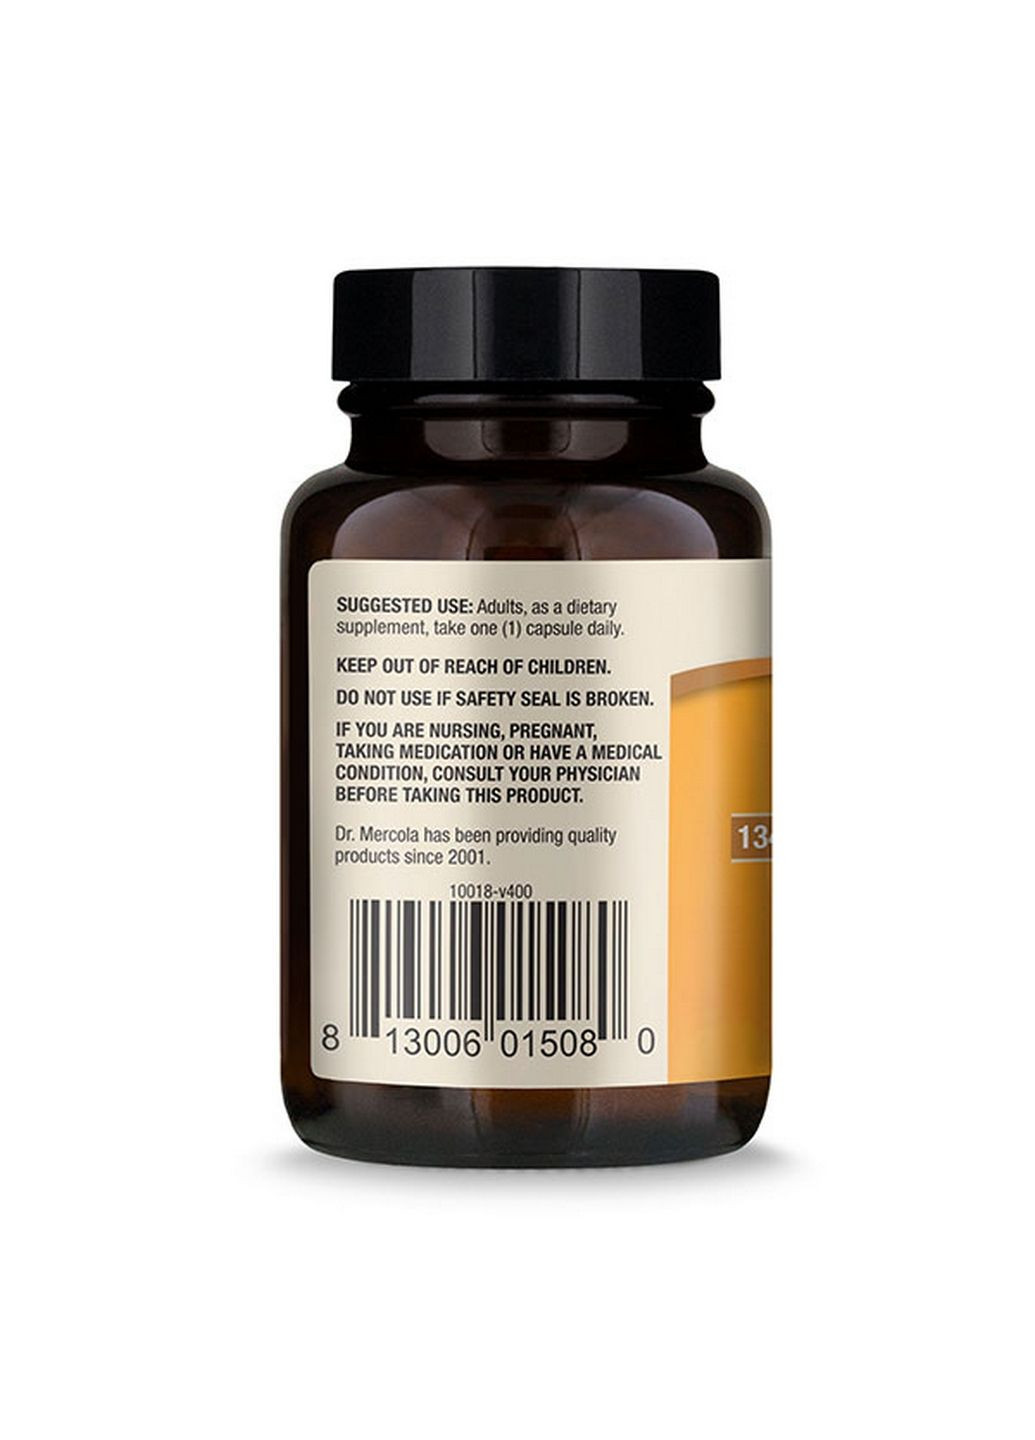 Витамины и минералы Vitamin E, 30 капсул Dr. Mercola (293420904)